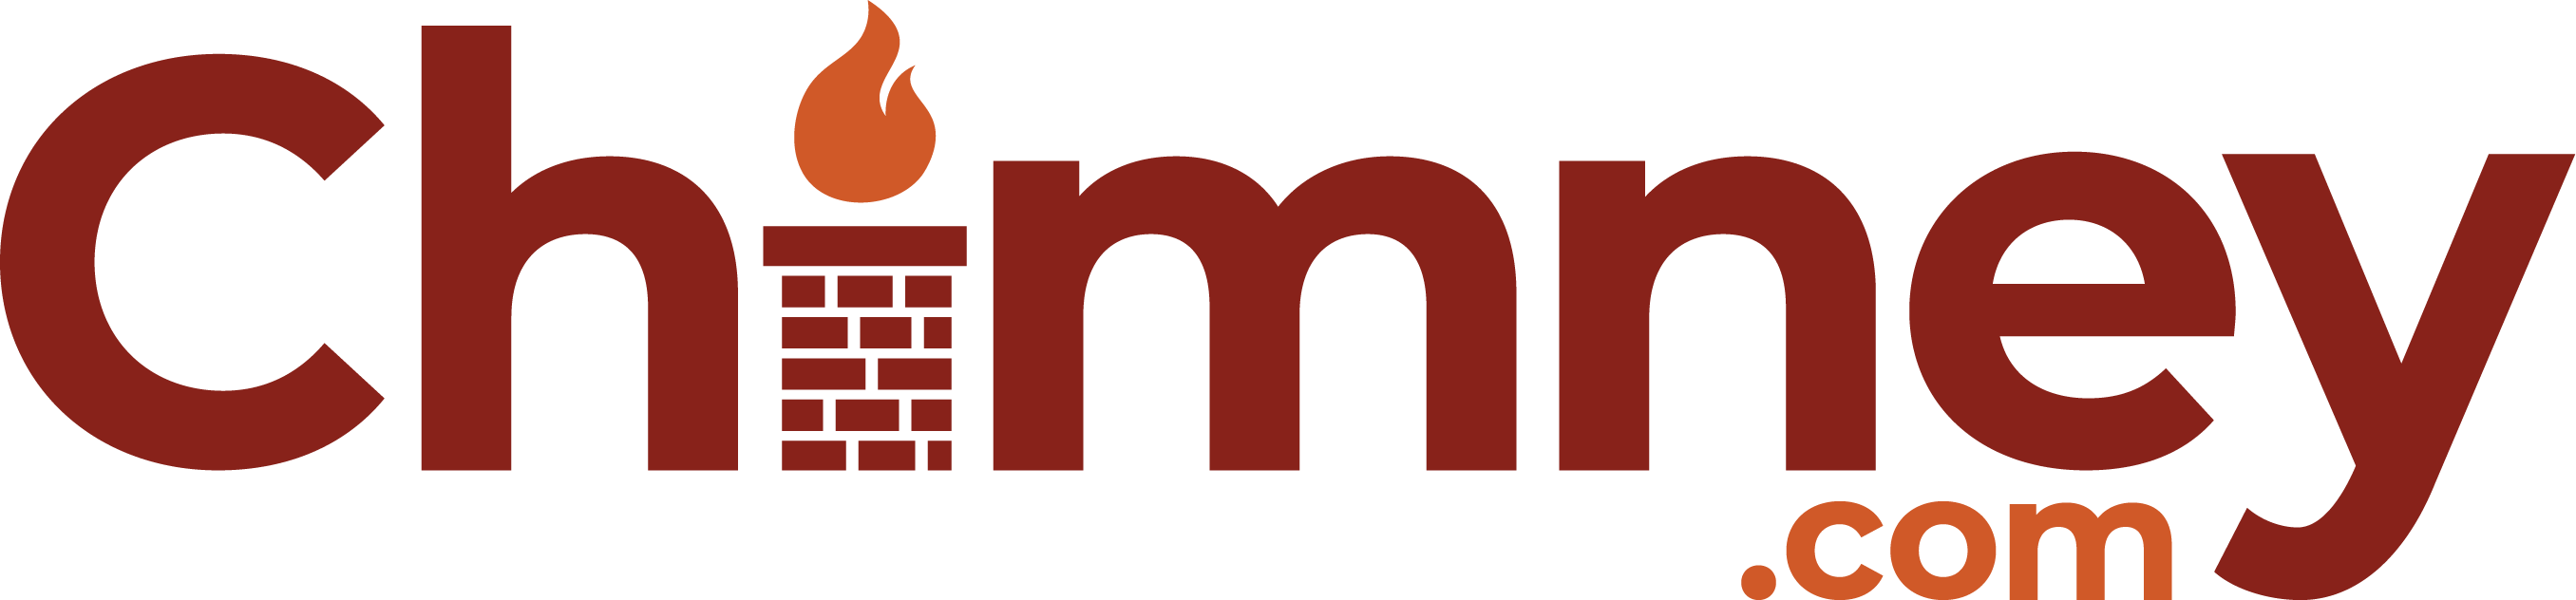 Chimney.com logo